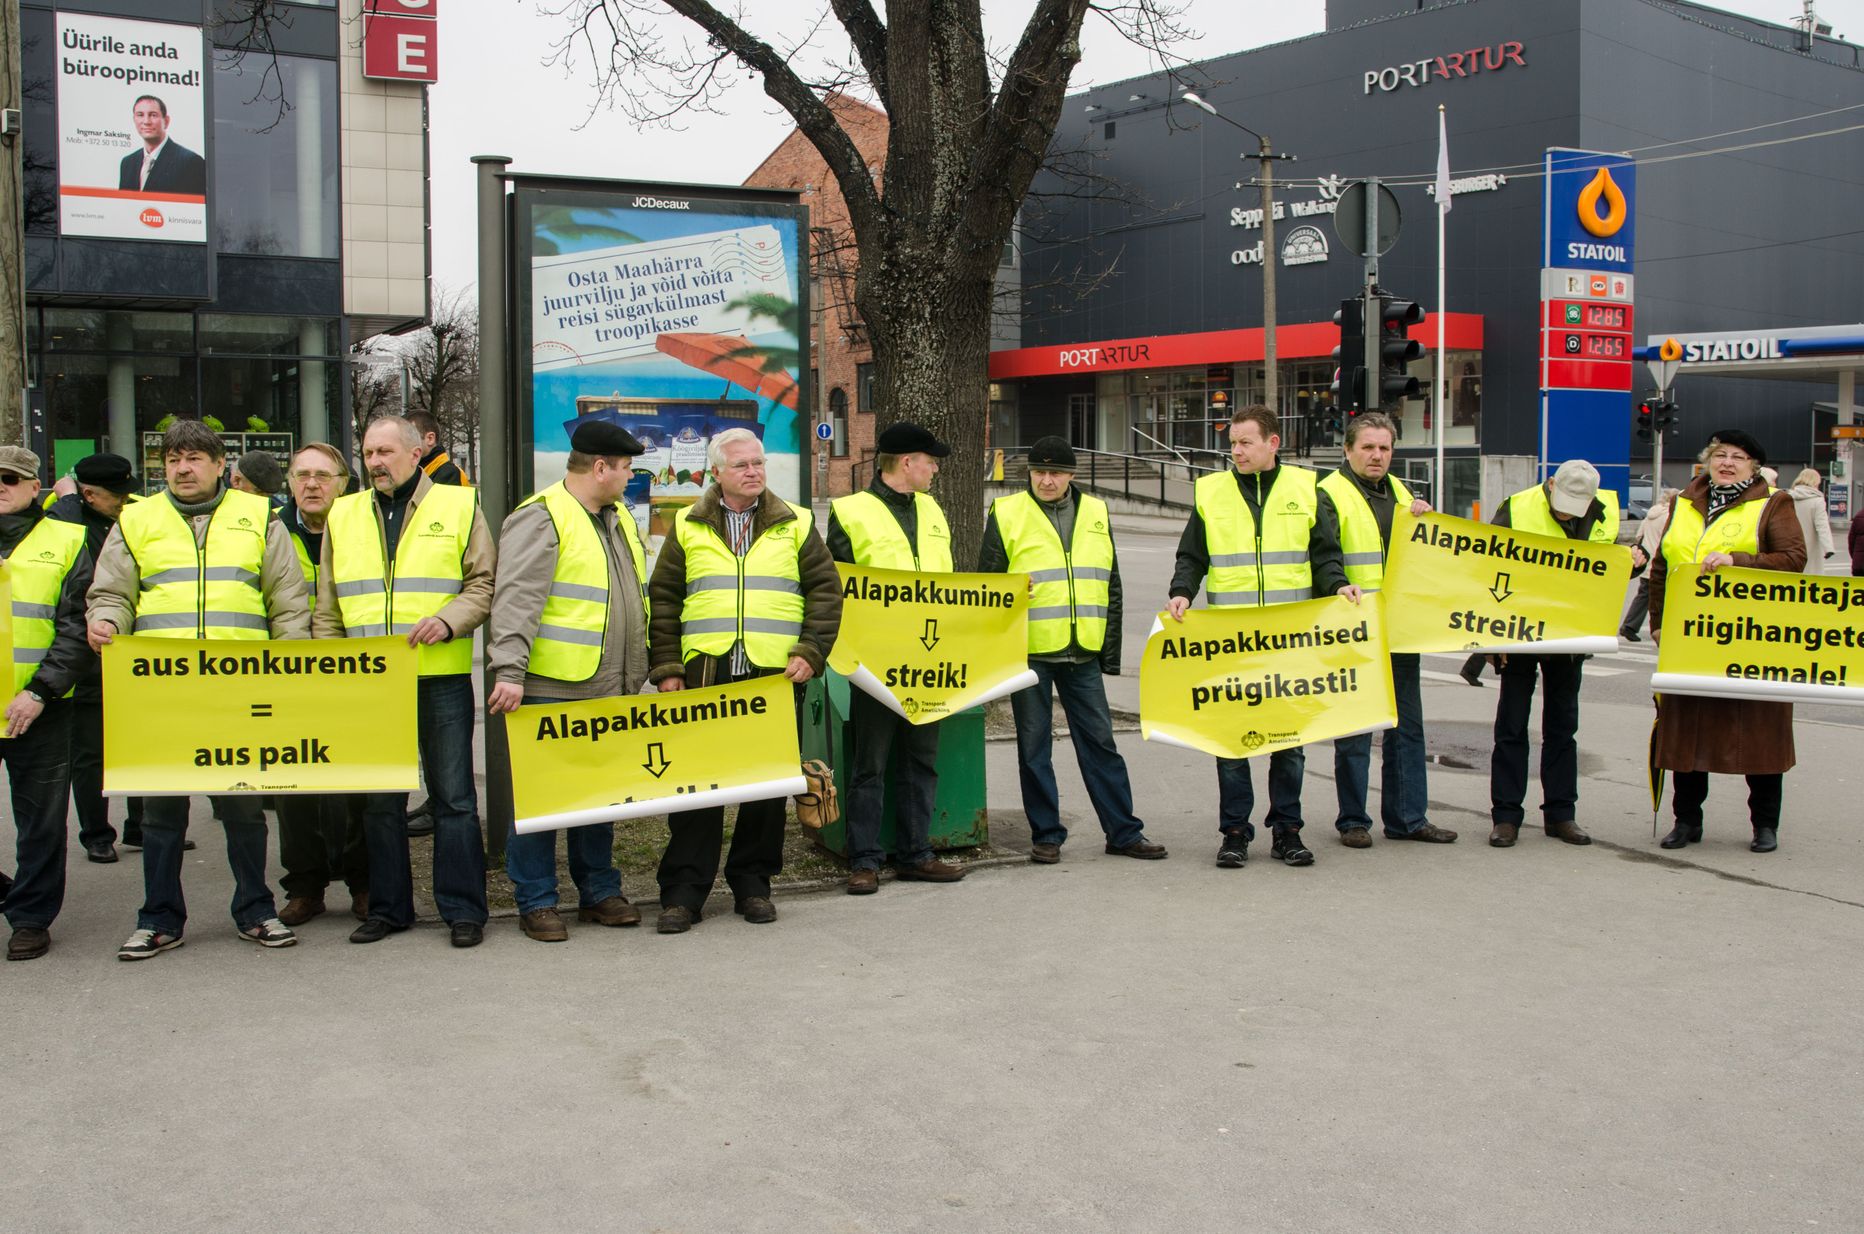 Palgatõusu need ATKO Grupi Pärnumaa bussijuhid, kes varem teenisid üleriigiliselt kokkulepitud bussijuhtide miinimumpalka 700 eurot kuus. Fotol aprilli alguses Pärnu bussijaamas toimunud bussijuhtide pikett, kus nõuti palgatõusu.